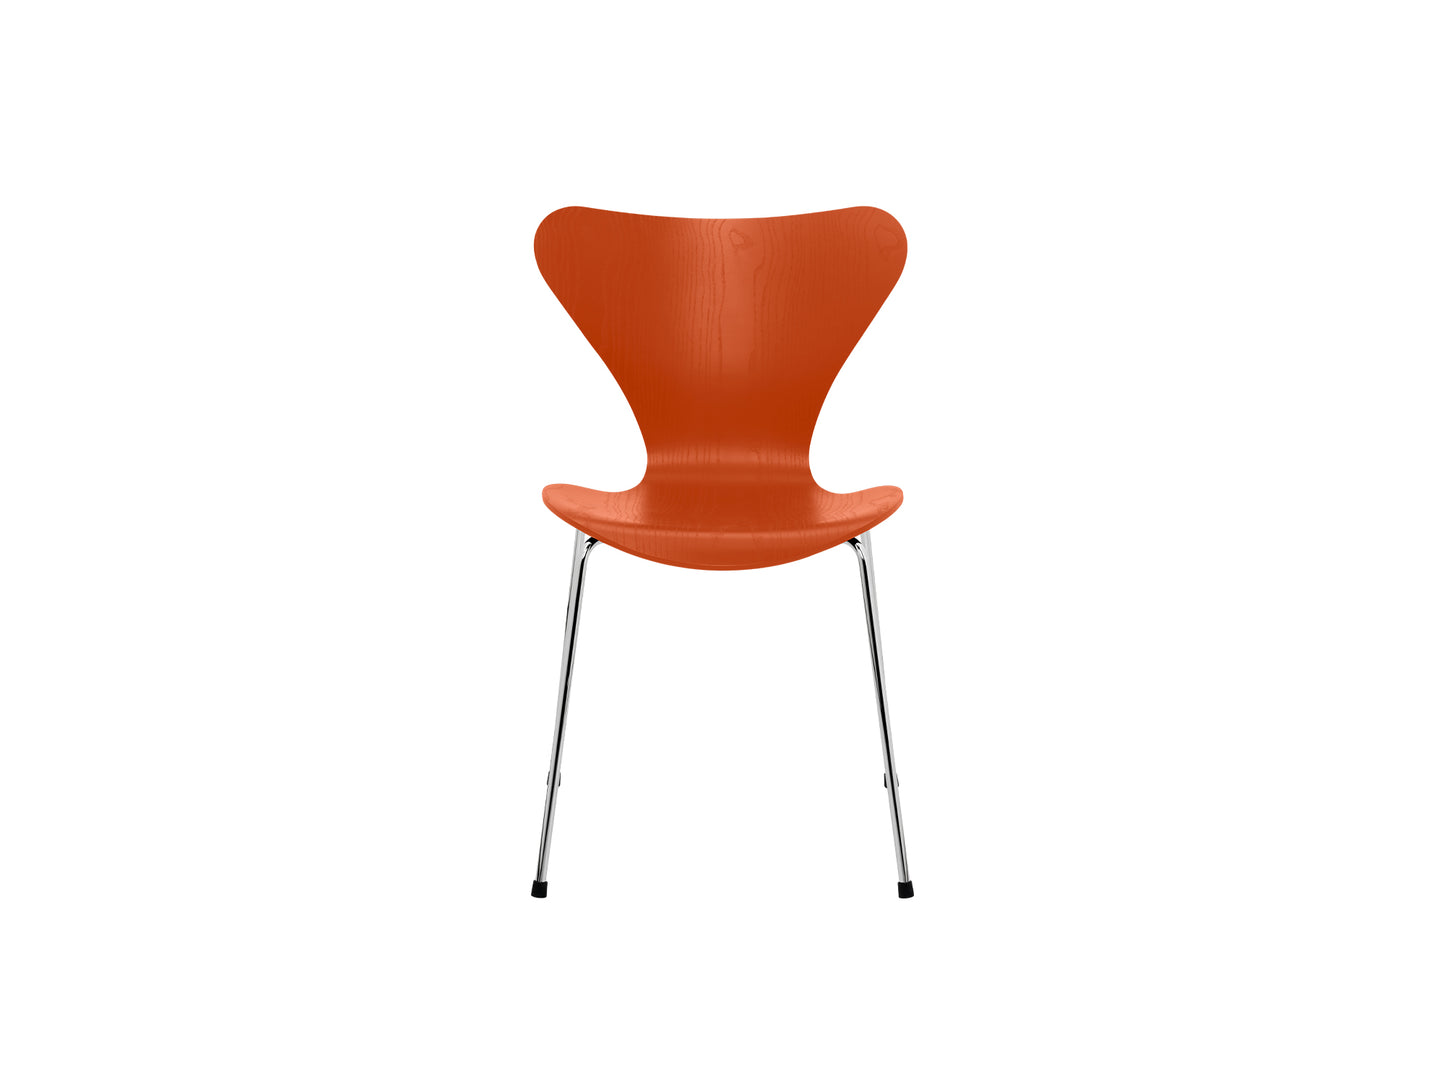 Series 7™ 3107 Dining Chair by Fritz Hansen - Paradise Orange Coloured Ash Veneer Shell / Chromed Steel